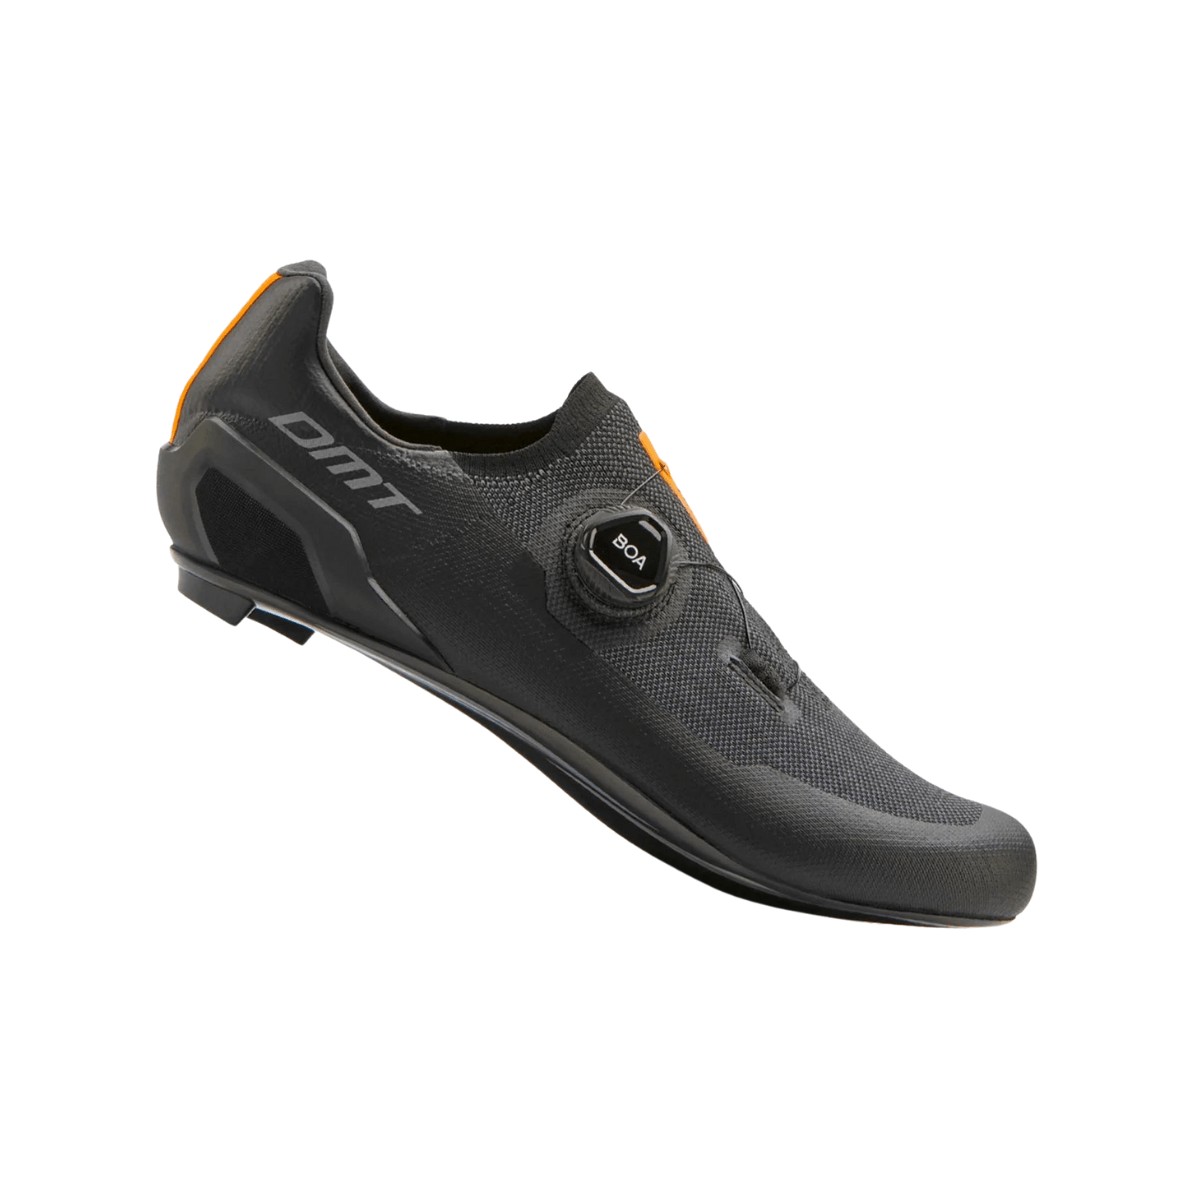 Shoes DMT KR30 Black AW22, Size 43 - EUR